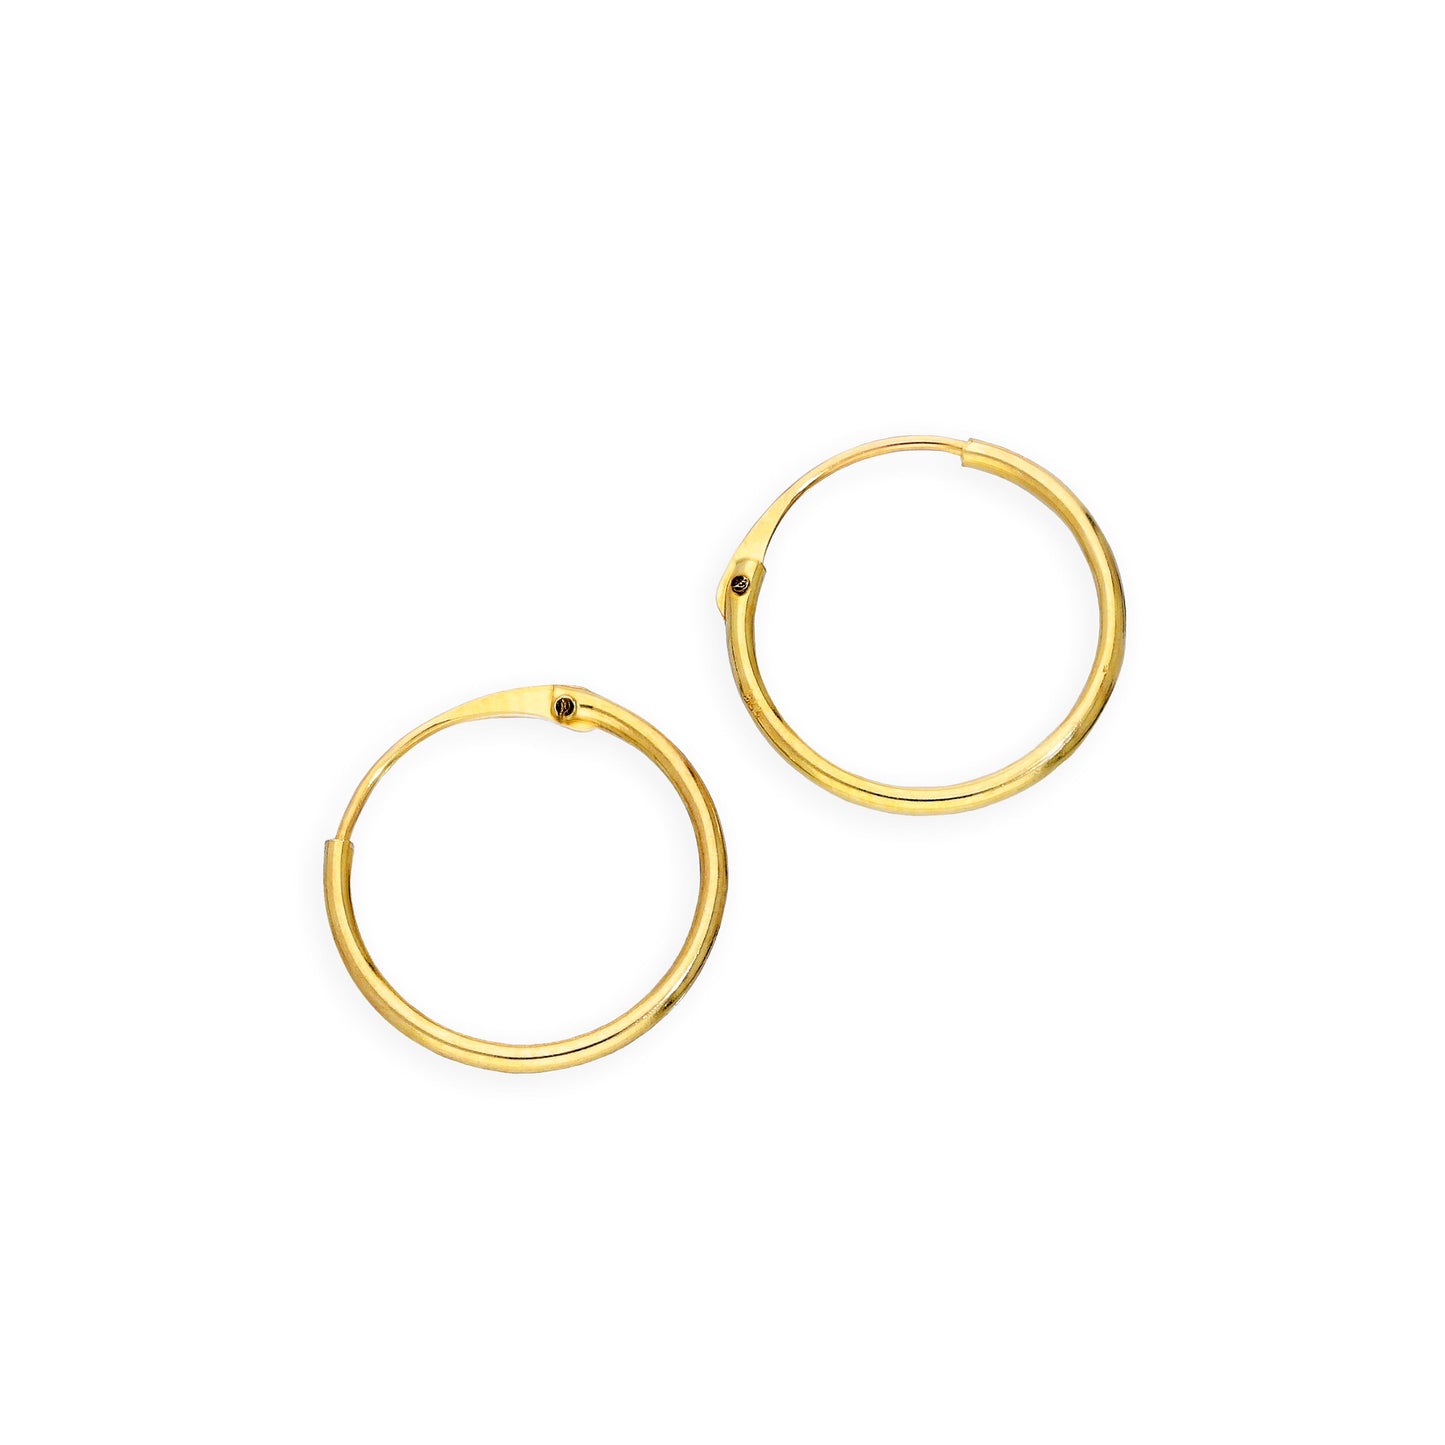 9ct Gold 0.8mm Tube Hoop Earrings 8mm - 20mm